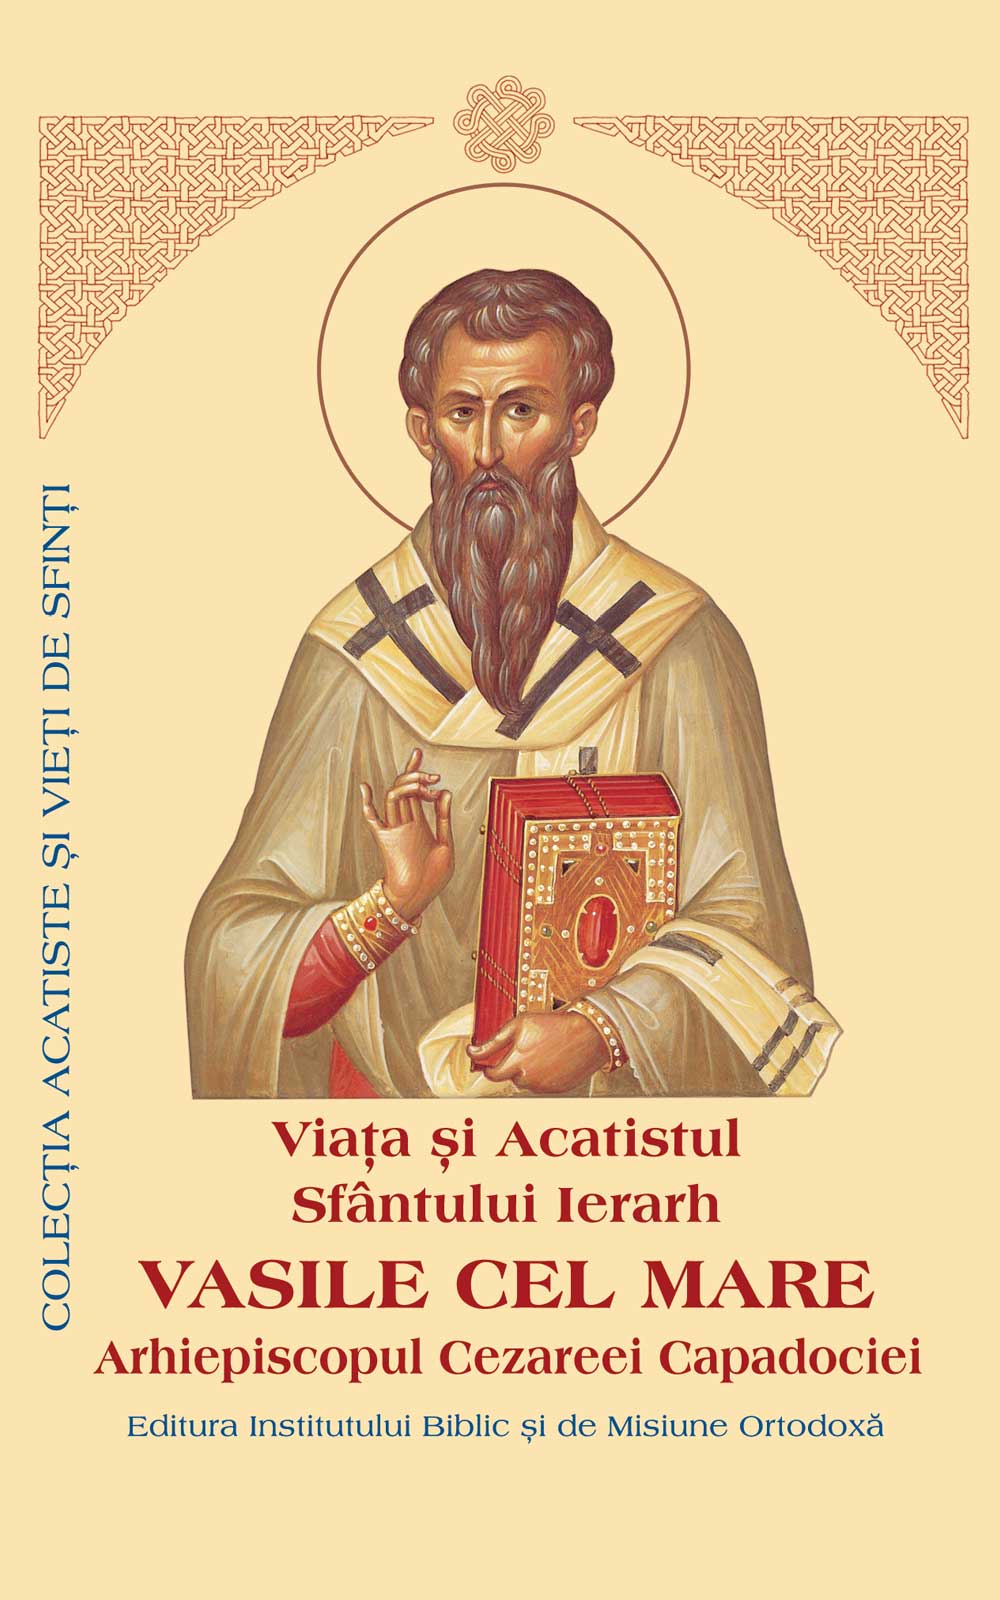 Viaţa şi Acatistul Sfântului Ierarh Vasile cel Mare, Arhiepiscopul Cezareei Capadociei